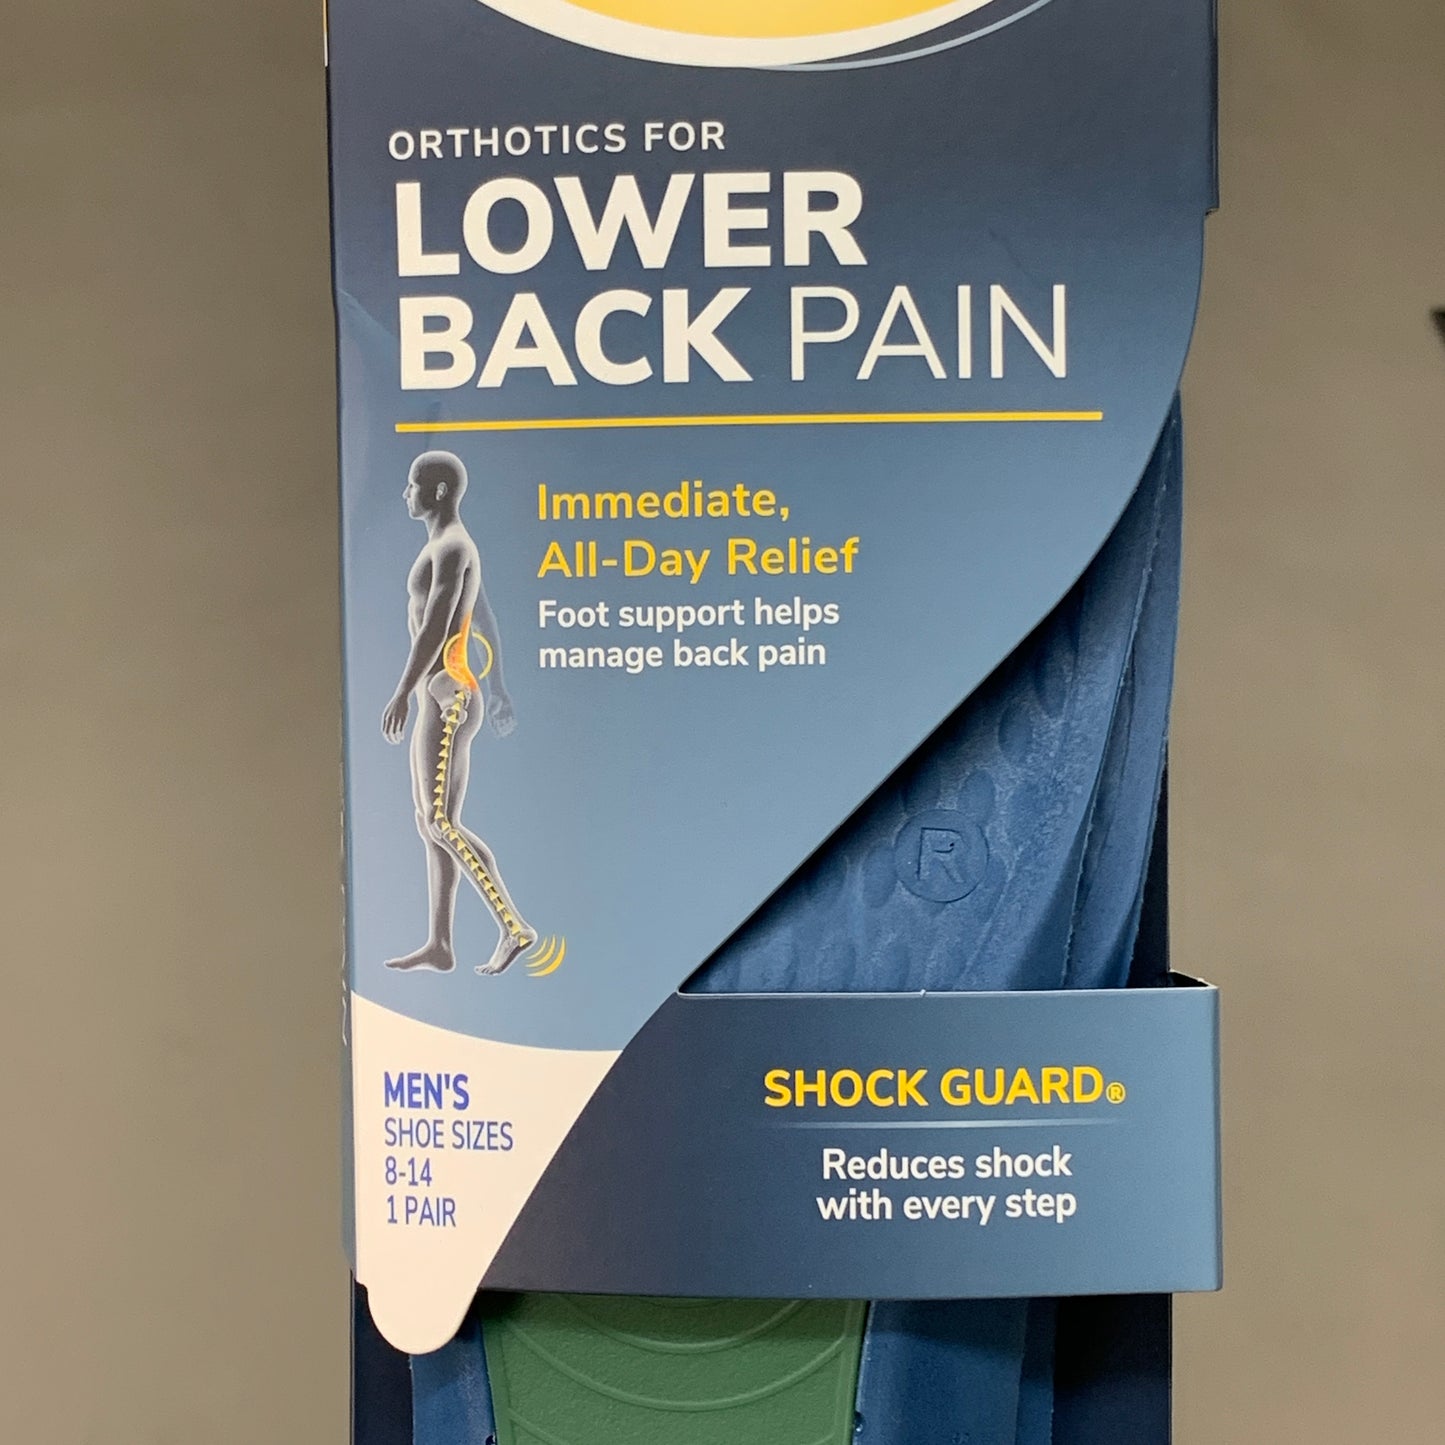 DR. SCHOLL'S Shock Guard Orthotics Lower Back Pain Sz Men's 8-14 Multi-Color C0339 (New)